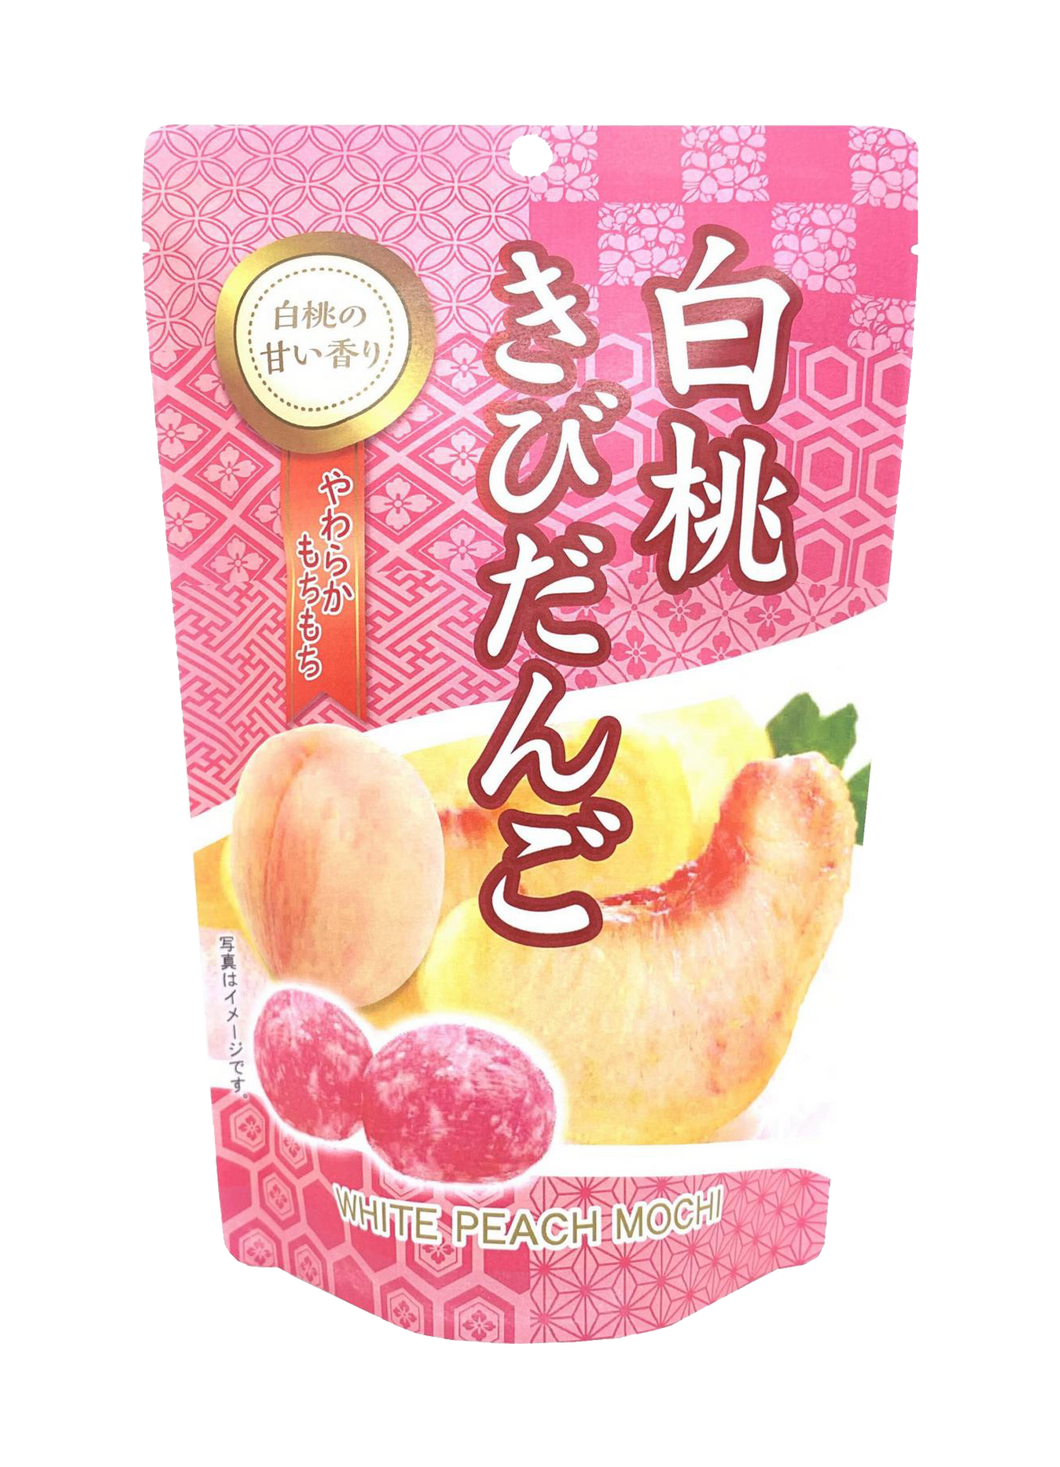 Seiki White Peach Mochi 130g